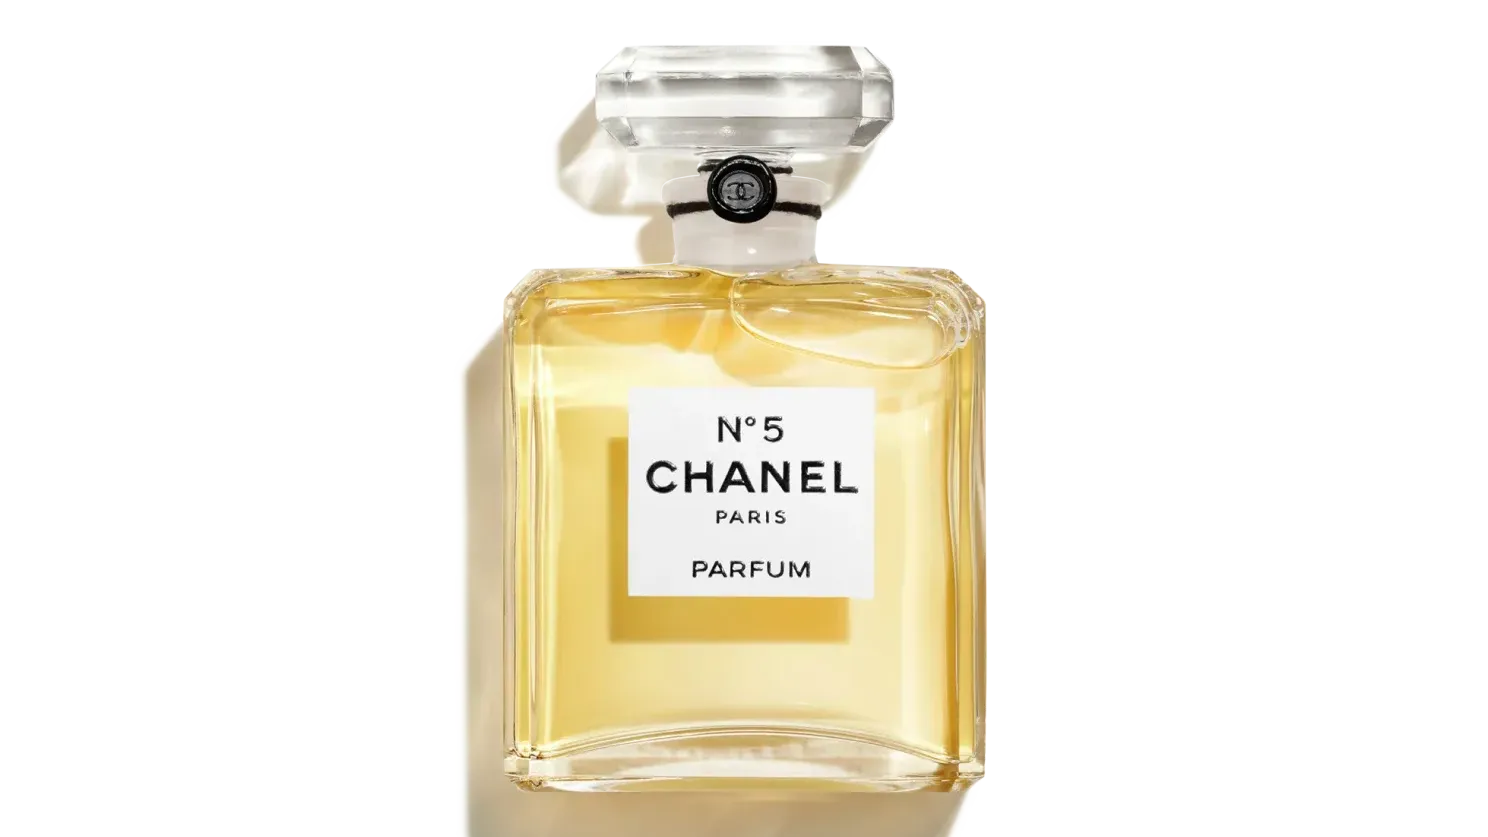 Das Original: Der Flakon von Chanel ist schlicht und doch aufwendig gestaltet. In ihm zeigt sich auch das Traditionsbewusstsein des Hauses.